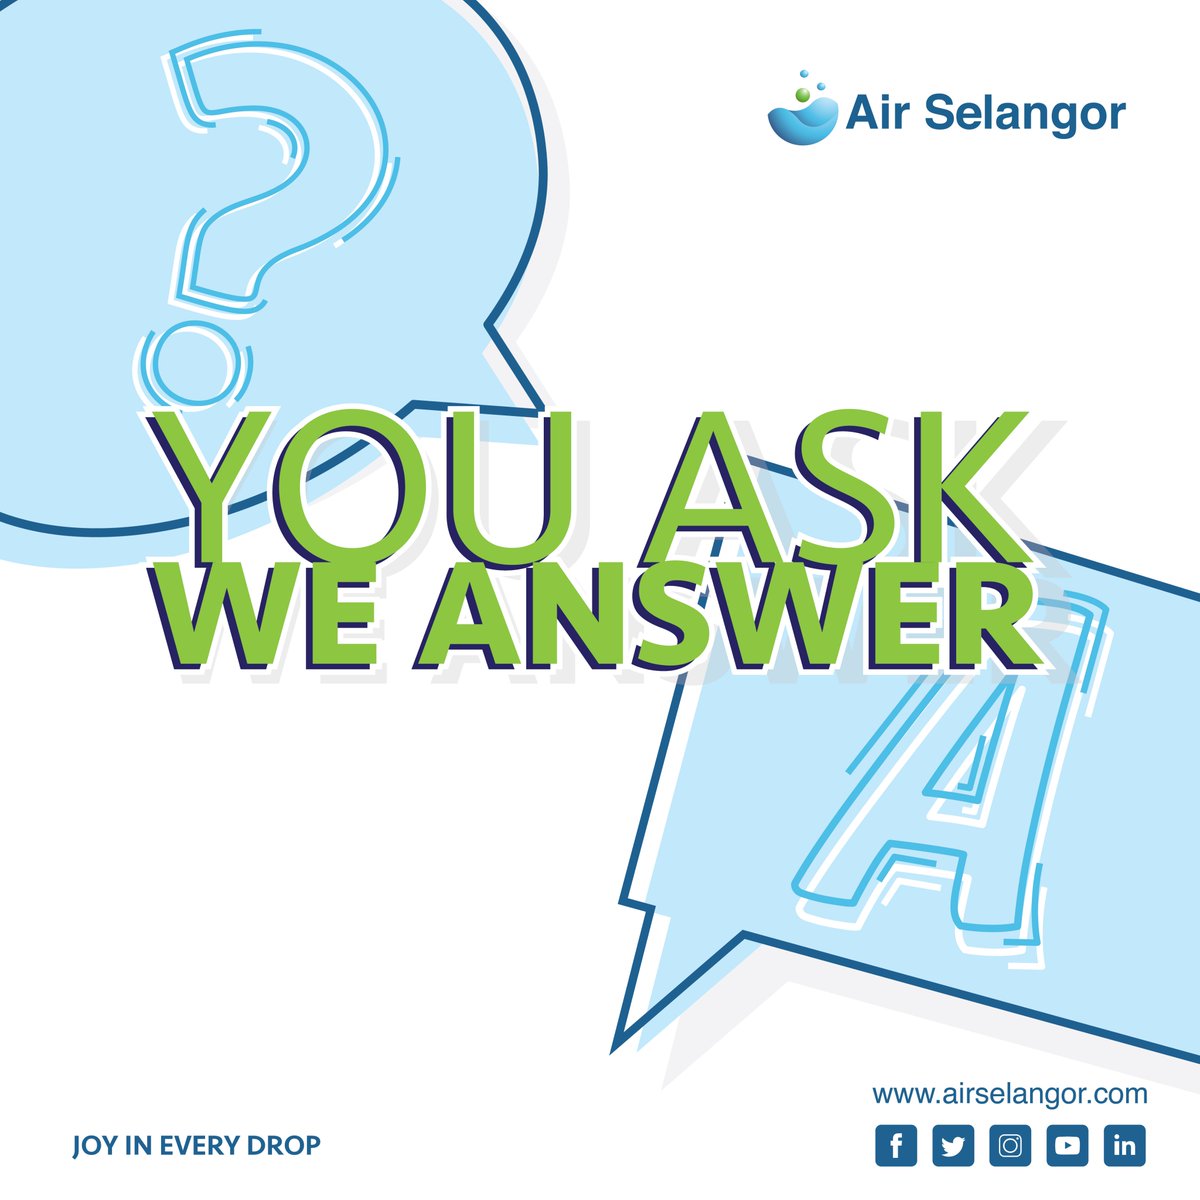 Air Selangor Air Selangor Twitter